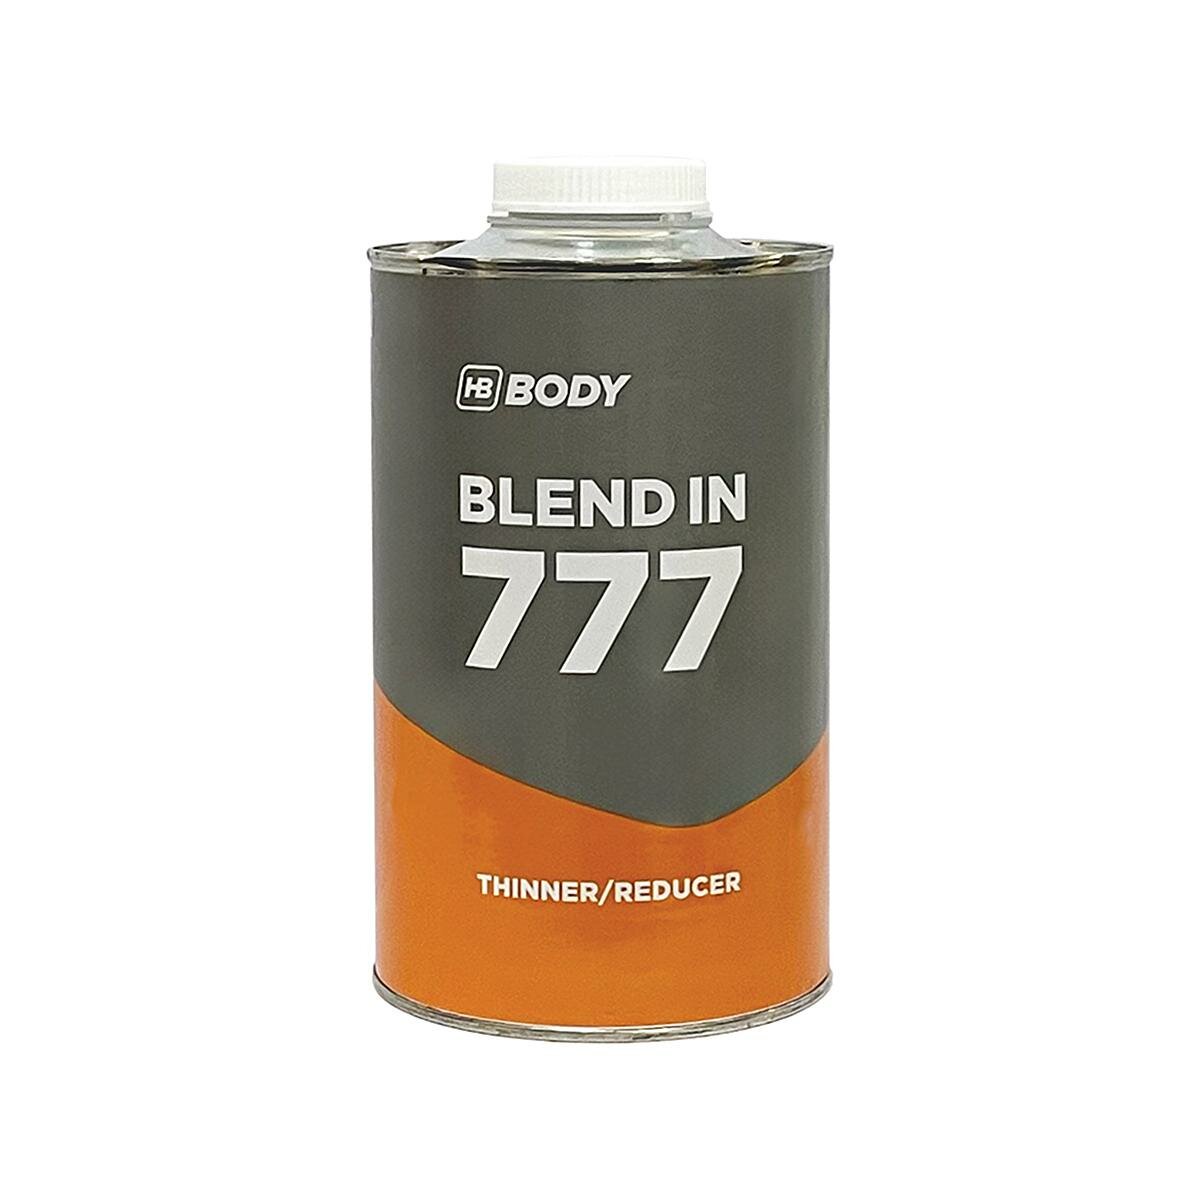 BODY 777 Blend-In Разбавитель для переходов 1 л.